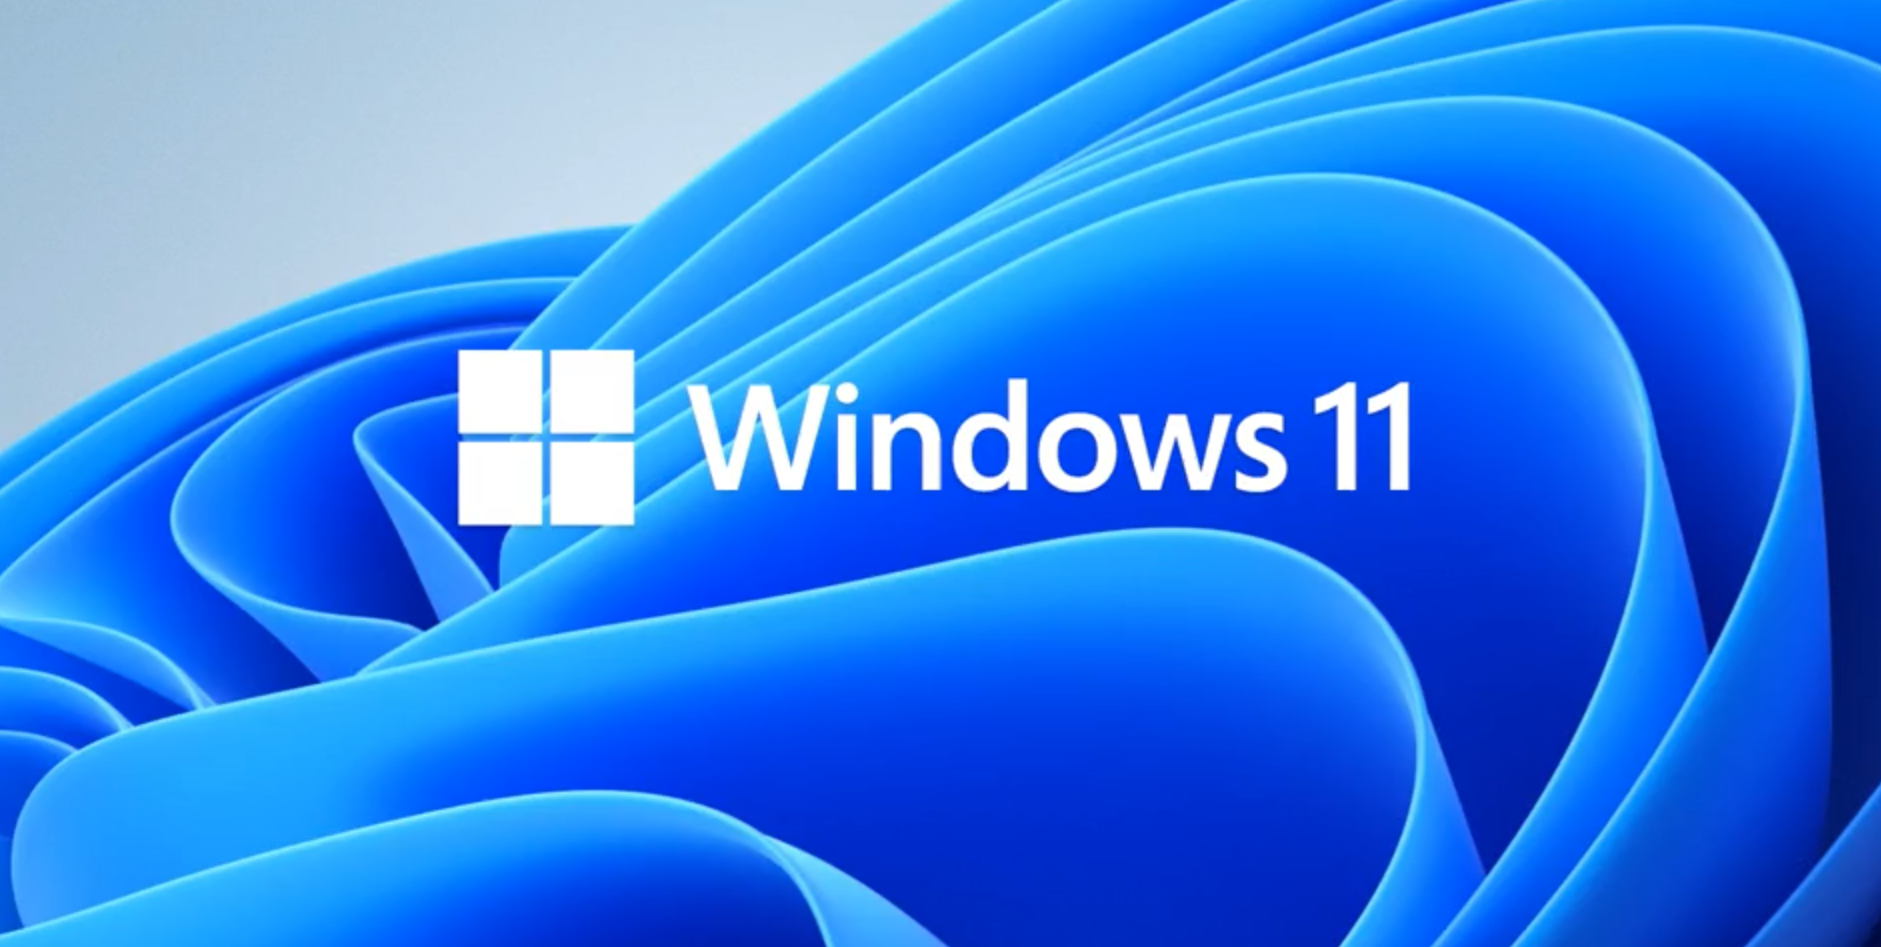 windows11来了全新设计免费升级还能运行android应用